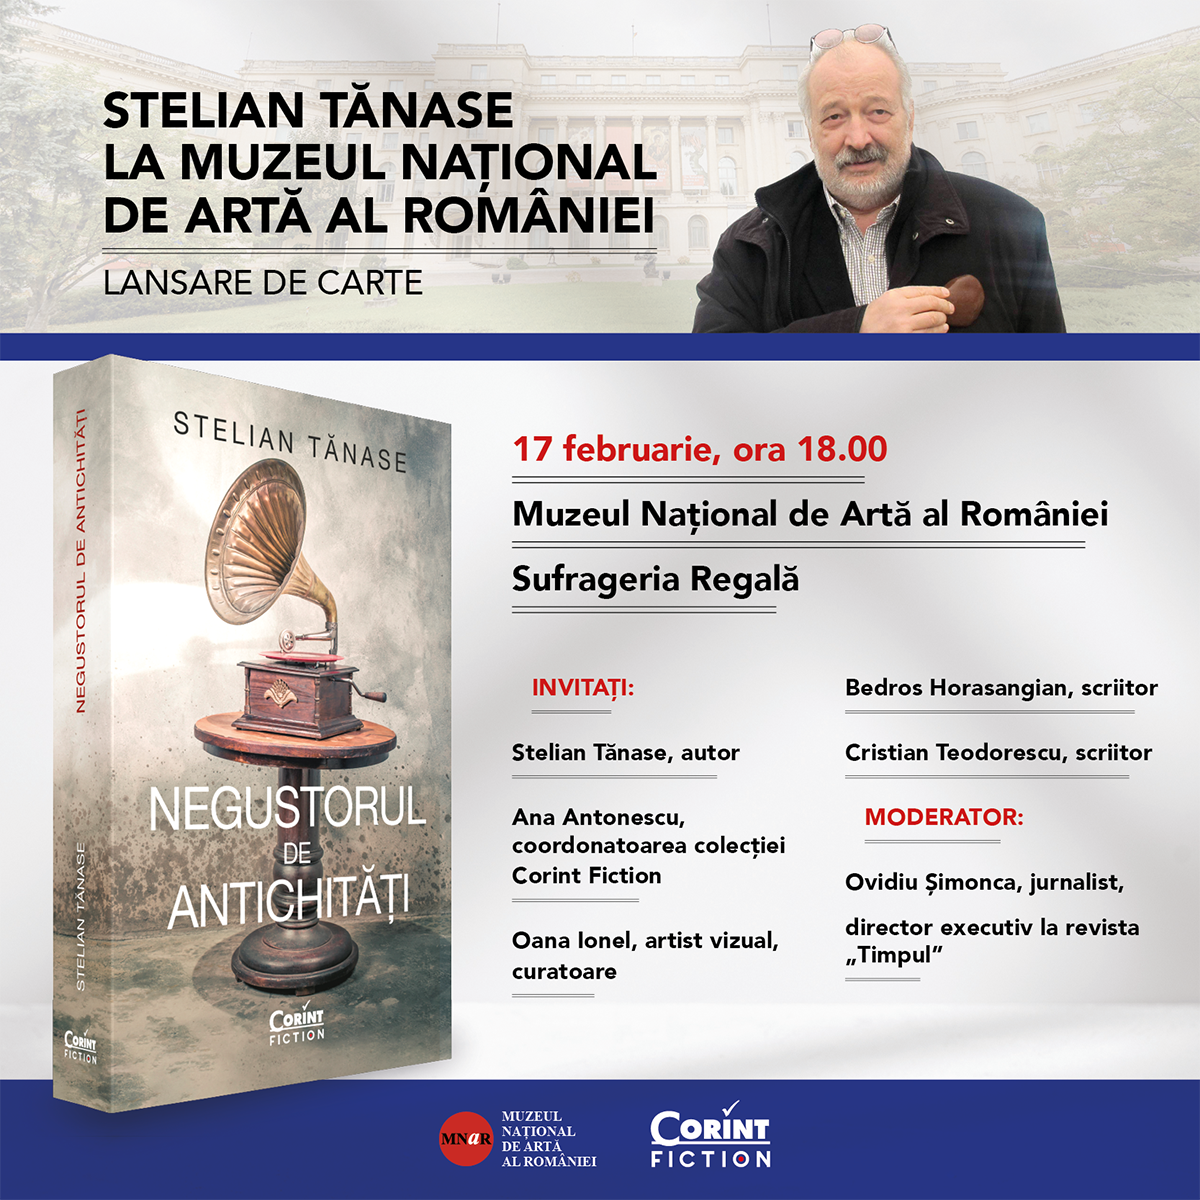 Stelian Tănase la Palatul Regal: lansare de carte și eveniment aniversar